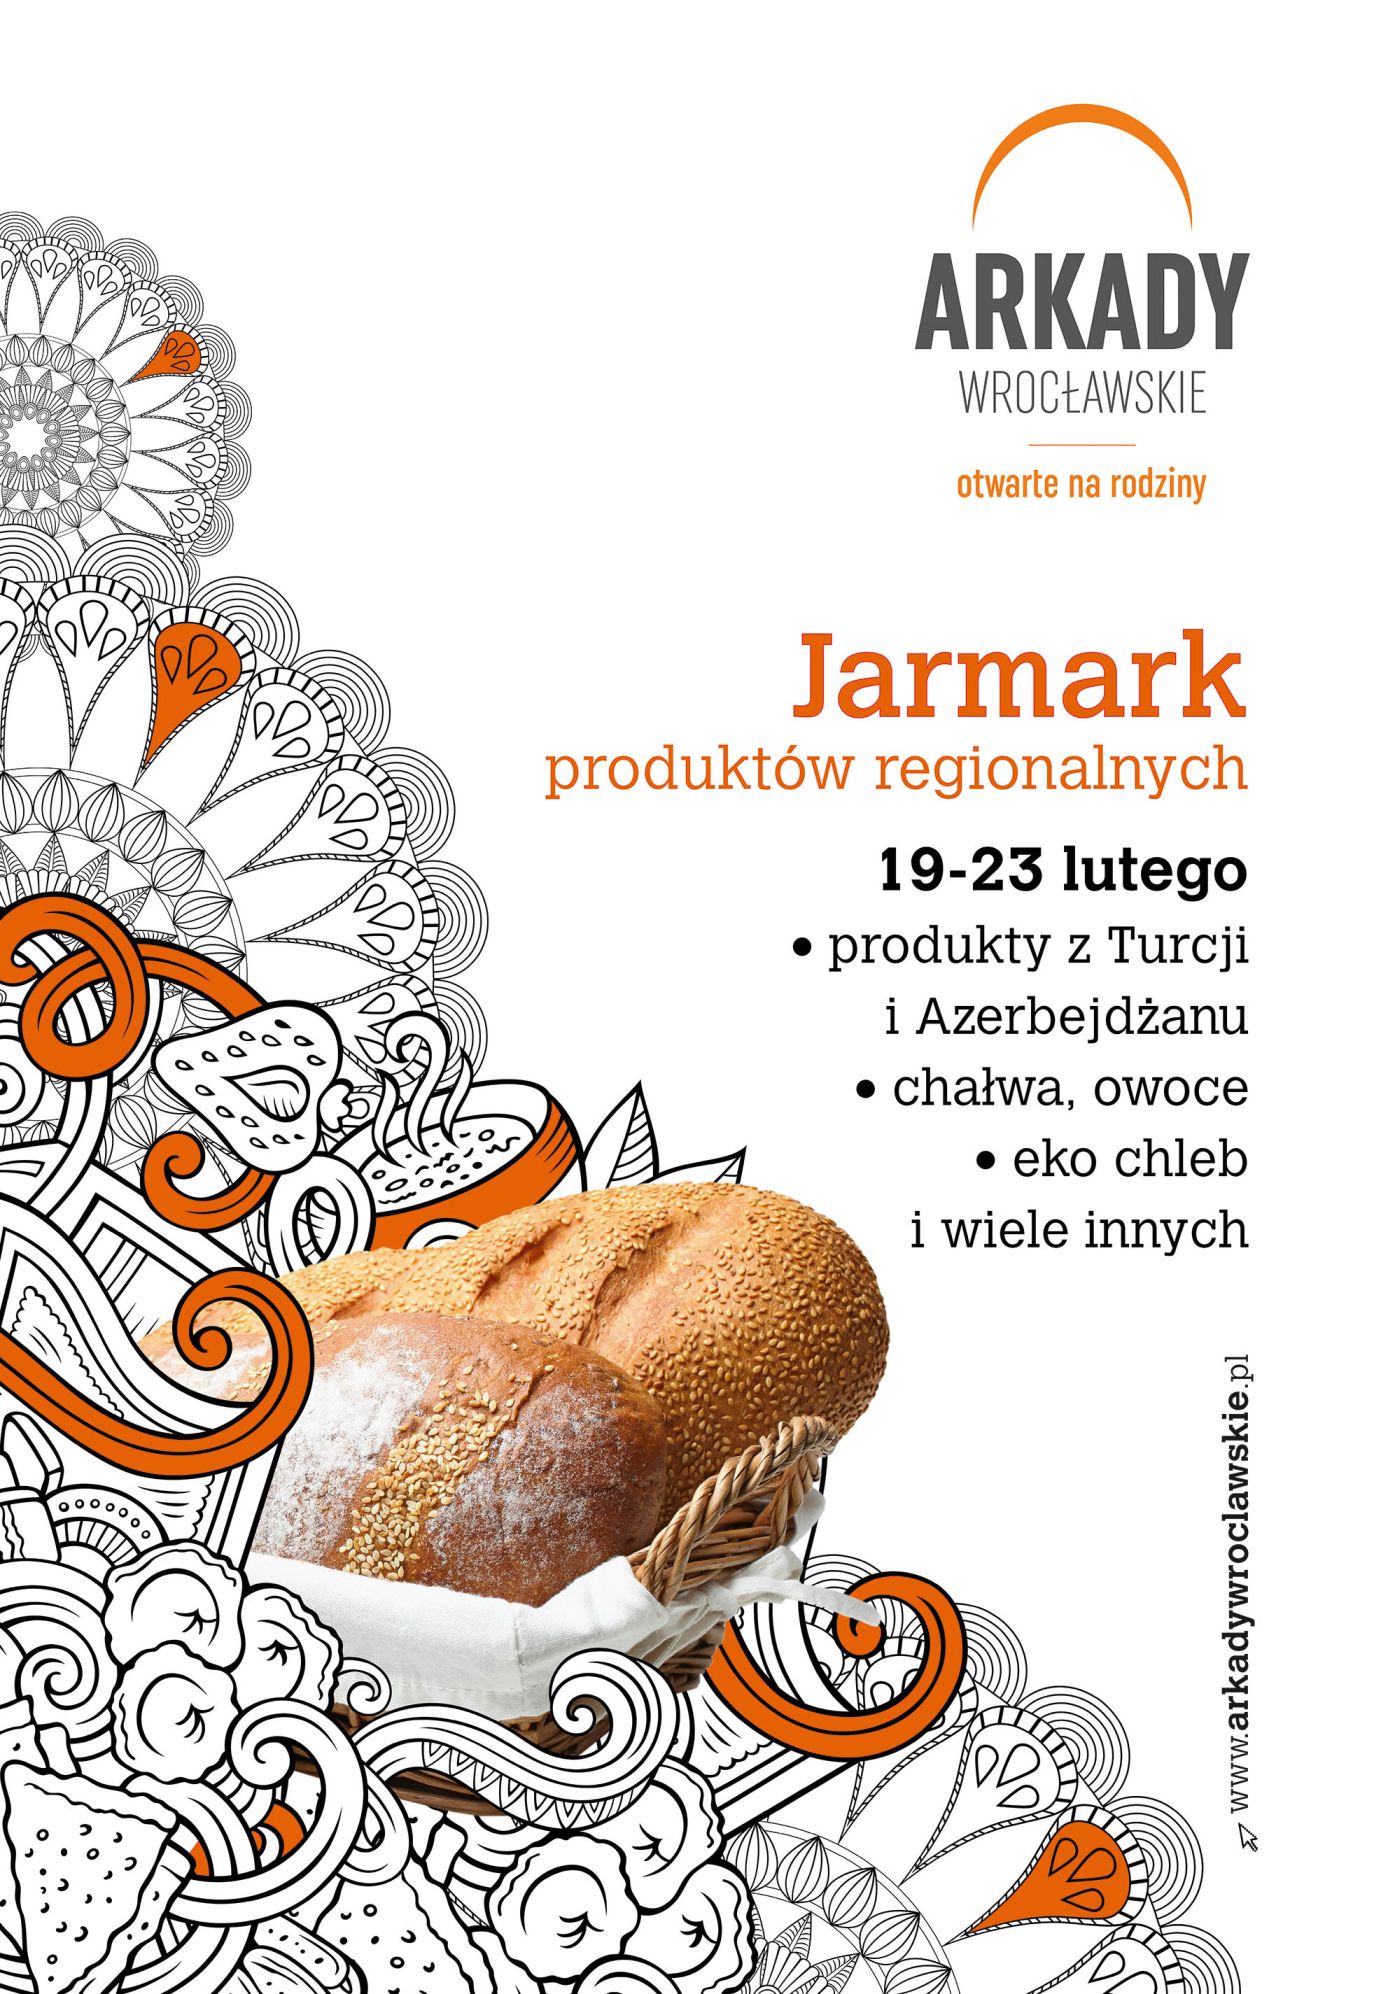 Jarmark Produktów Regionalnych w Arkadach Wrocławskich